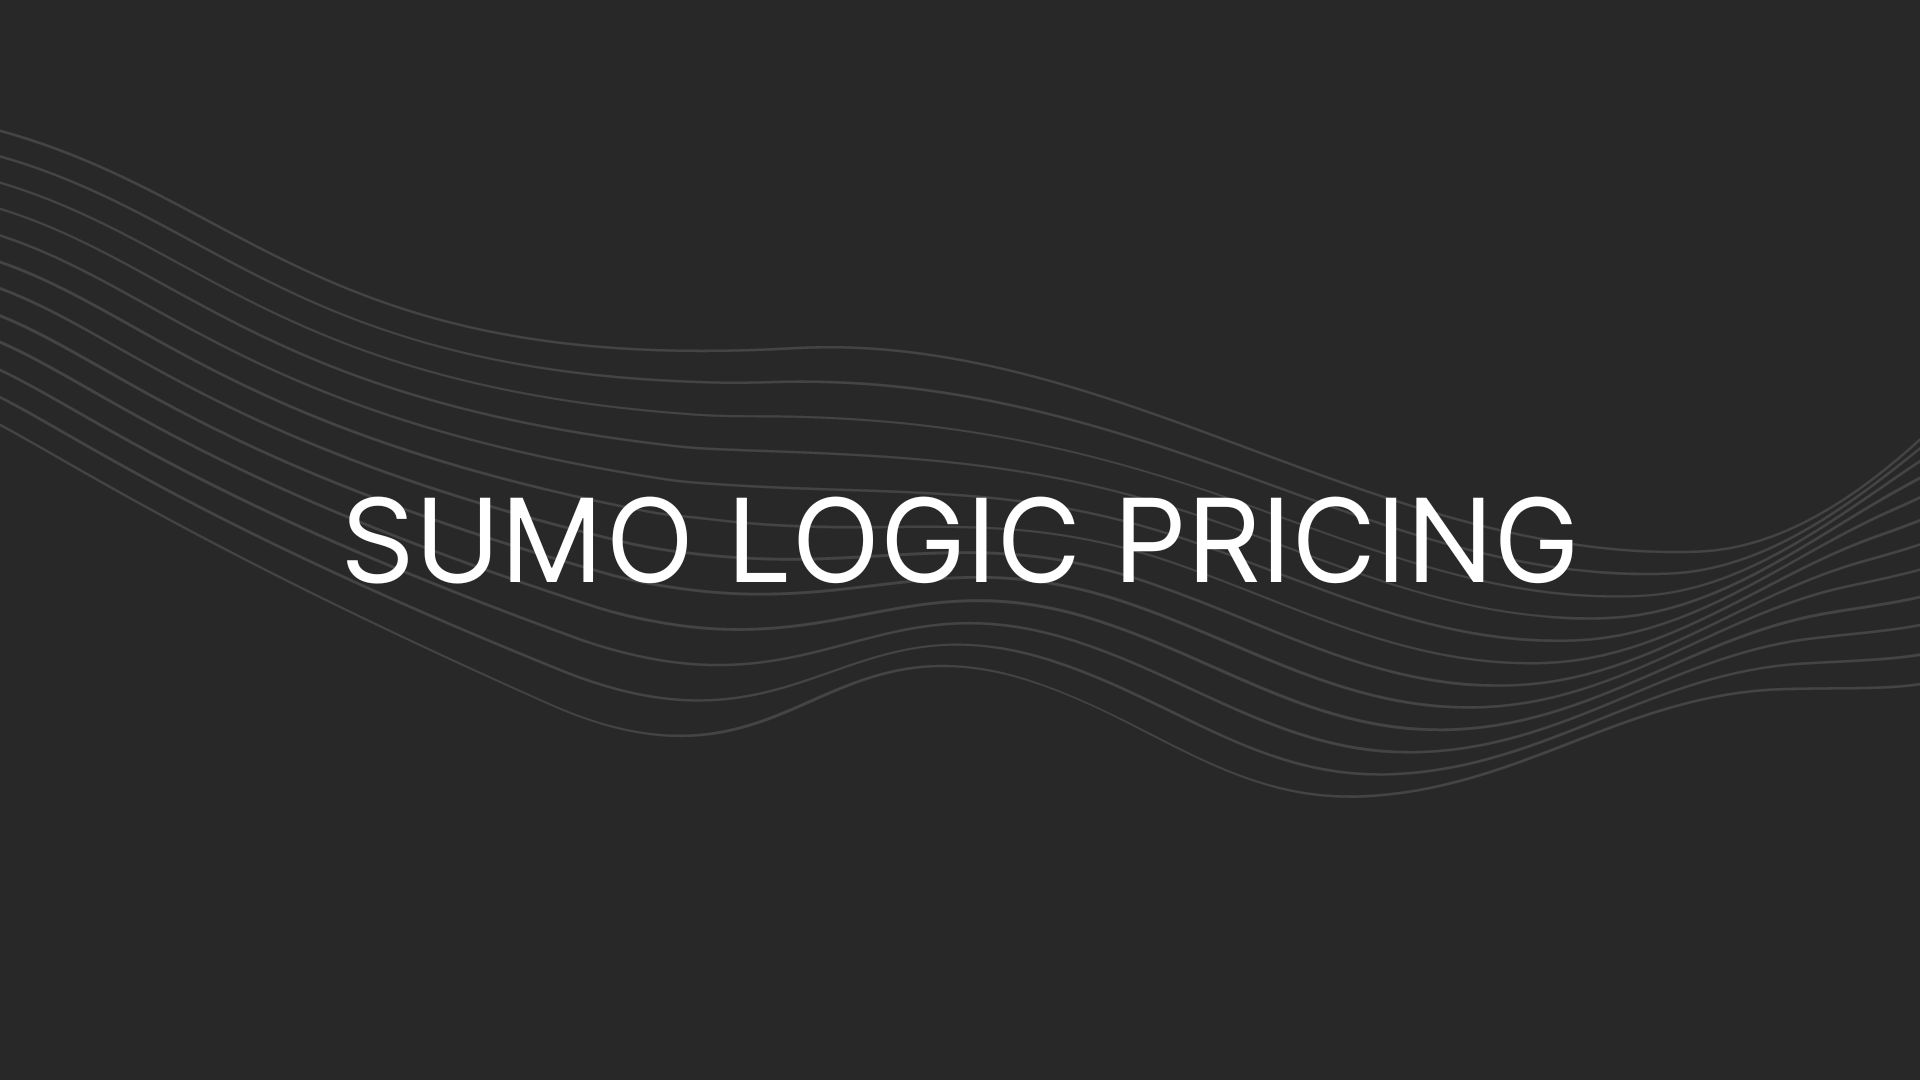 Sumo Logic Pricing